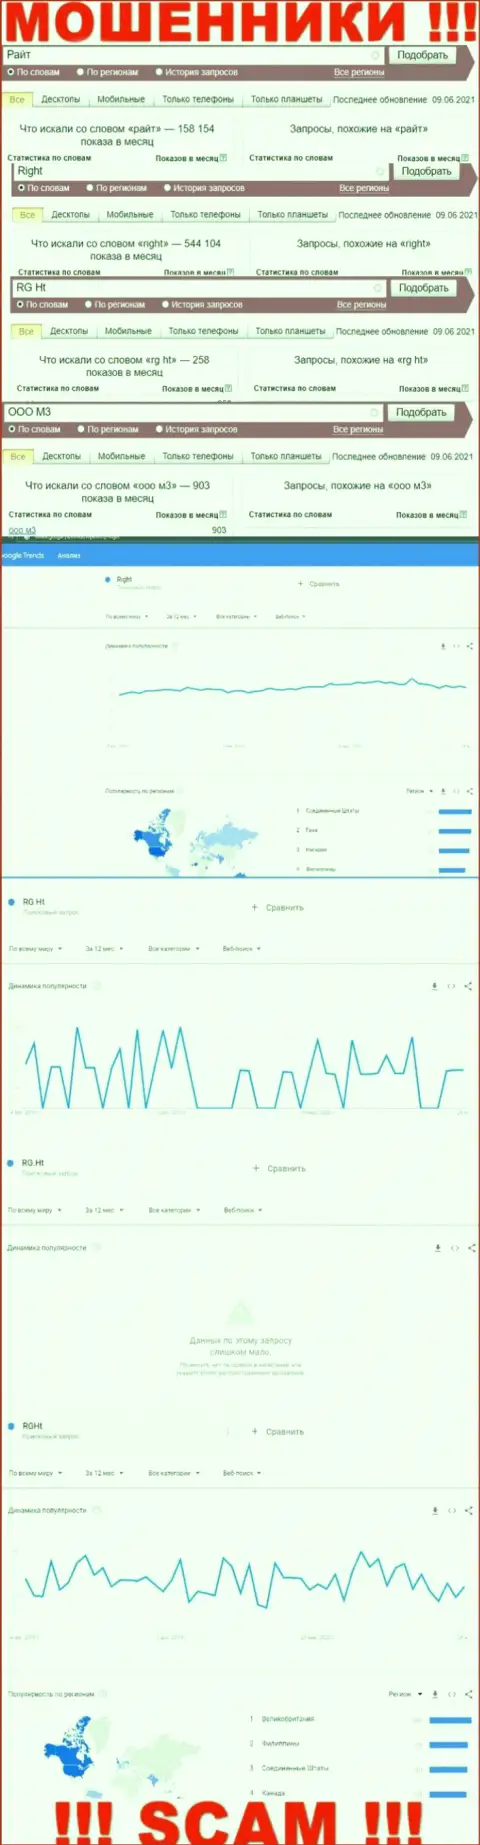 Статистические данные бренда Риг Хт, какое именно число поисковых запросов у указанной конторы